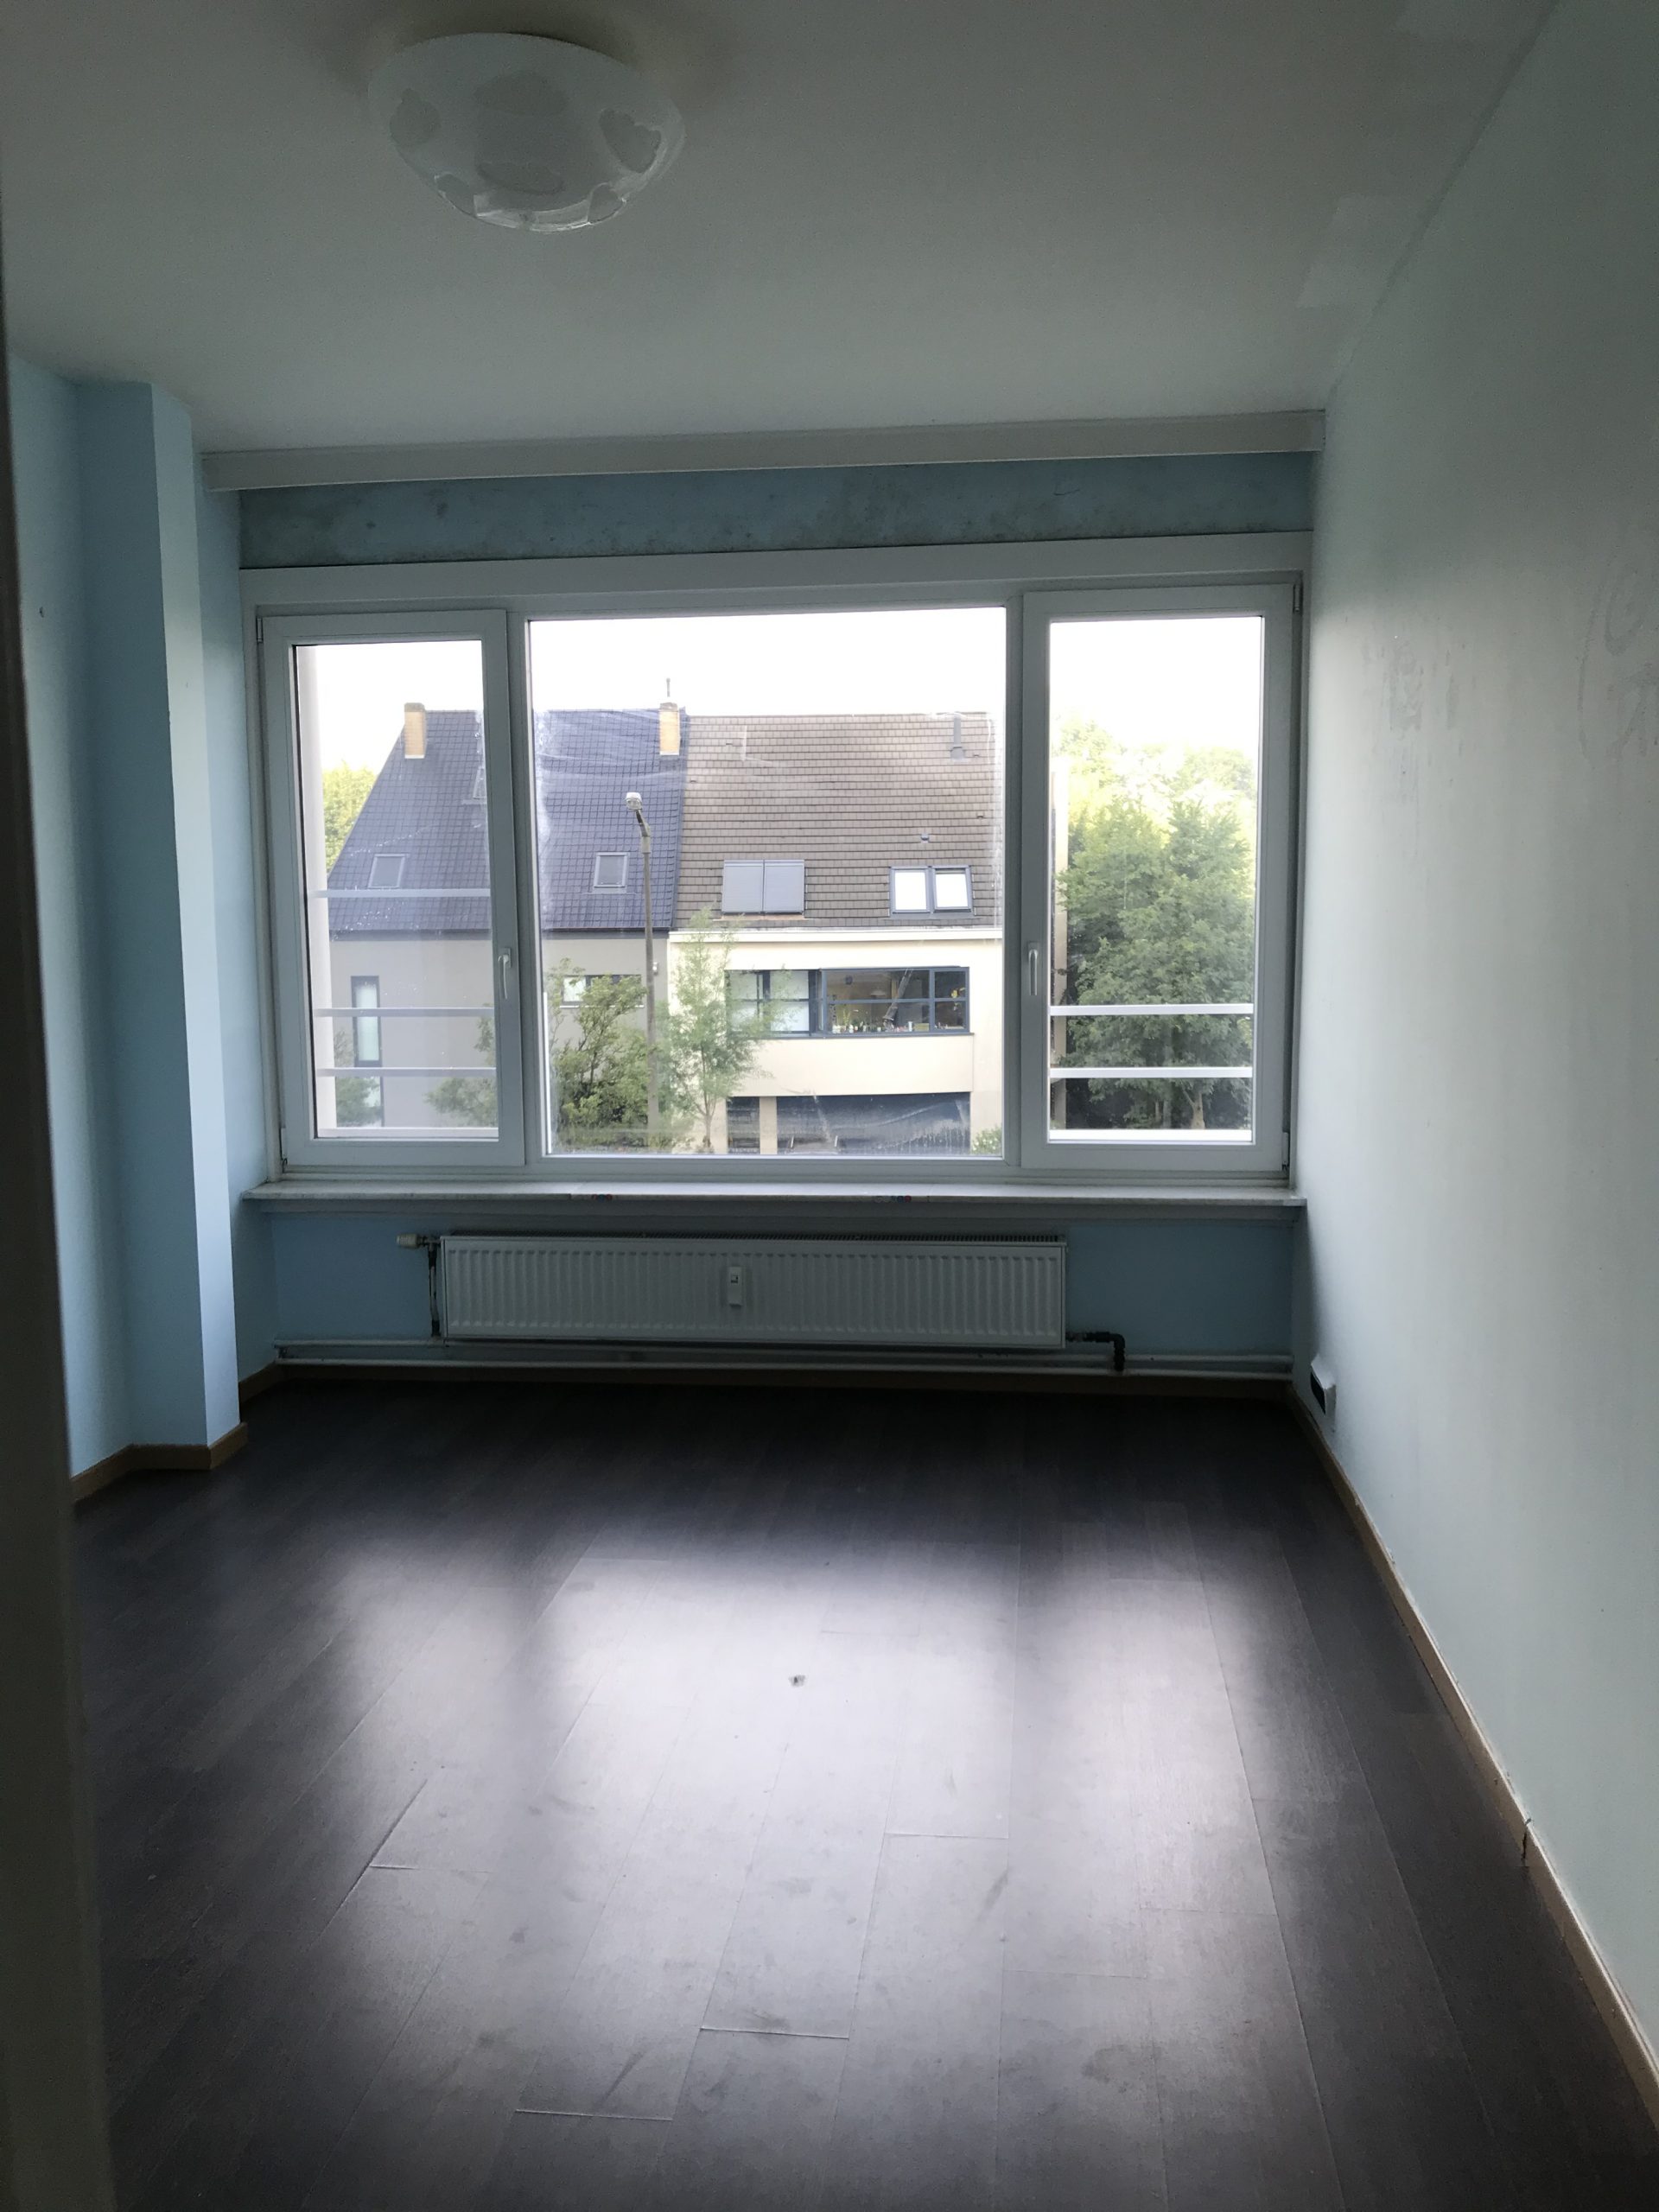  Uitzonderlijk ruim appartement vlakbij station Gent-Sint-Pieters